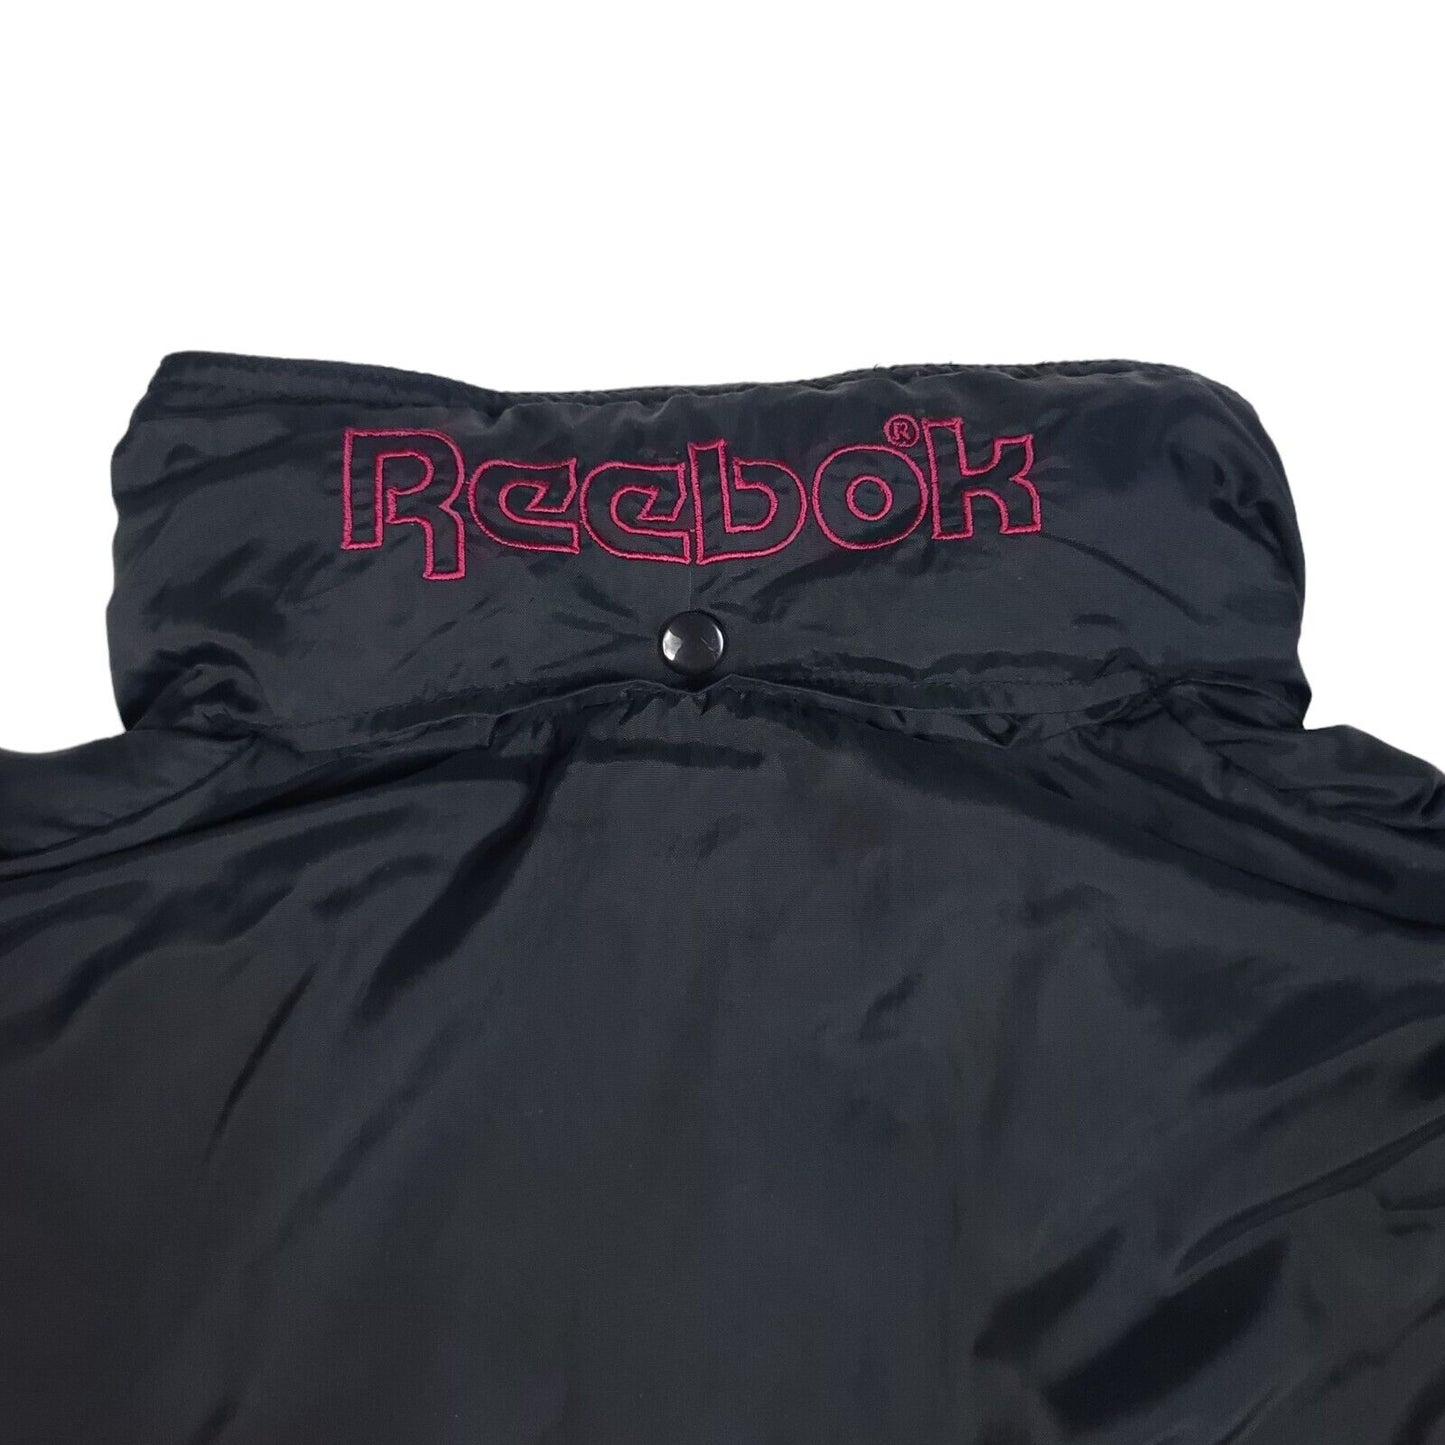 Reebok Sport Black Red 1/4 Zip Hooded Windbreaker Parka Jacket